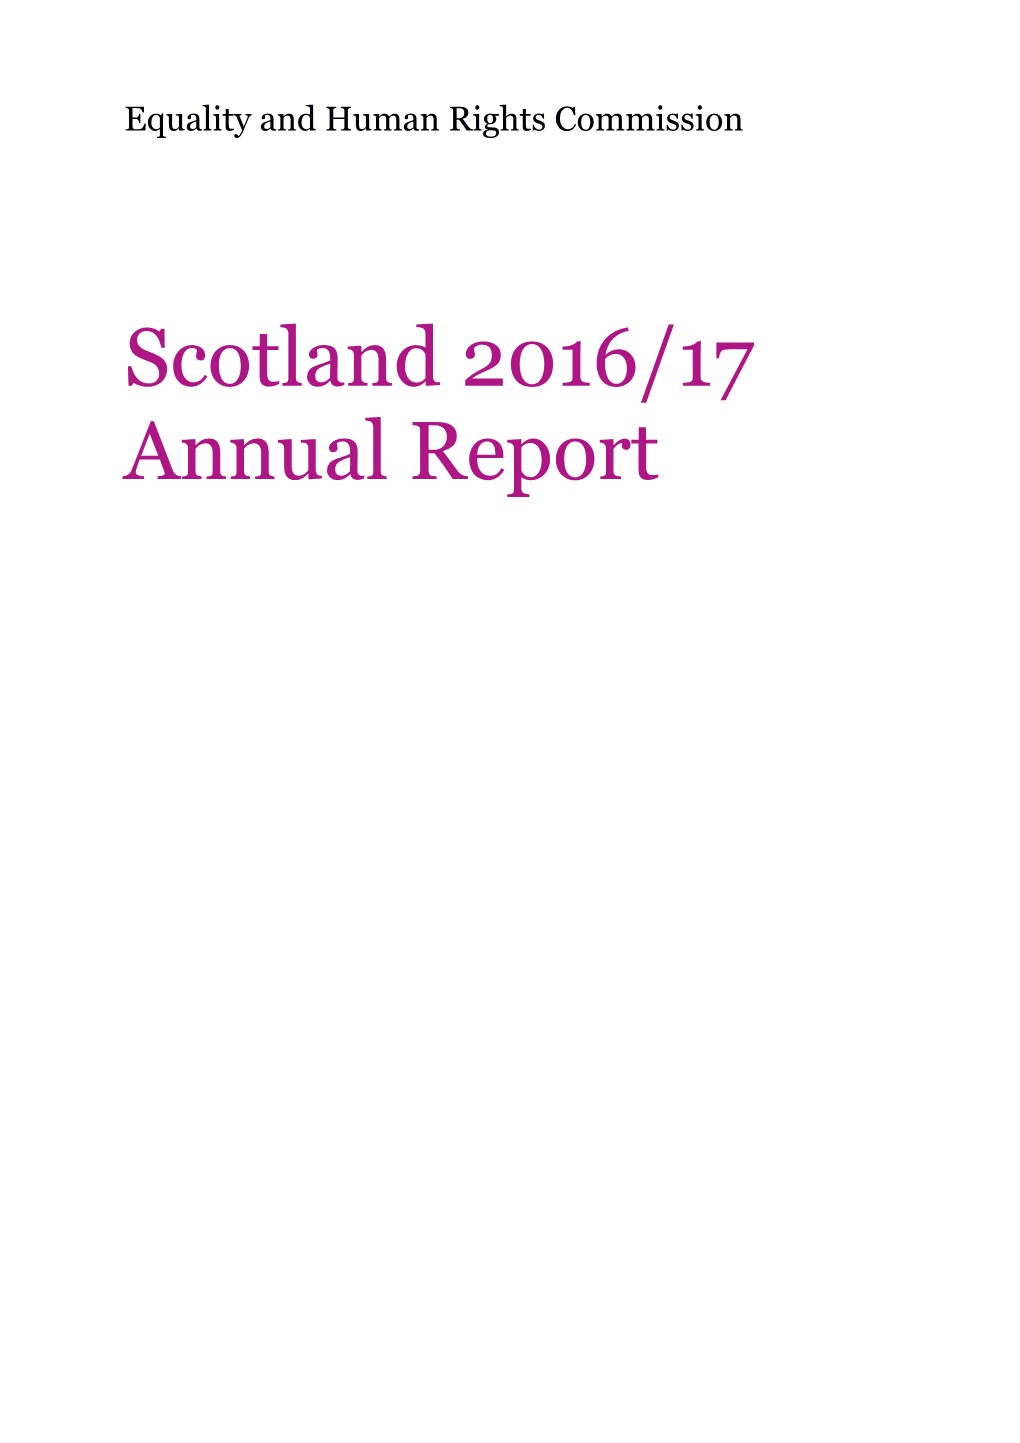 Scotland Annual Report 2016/17